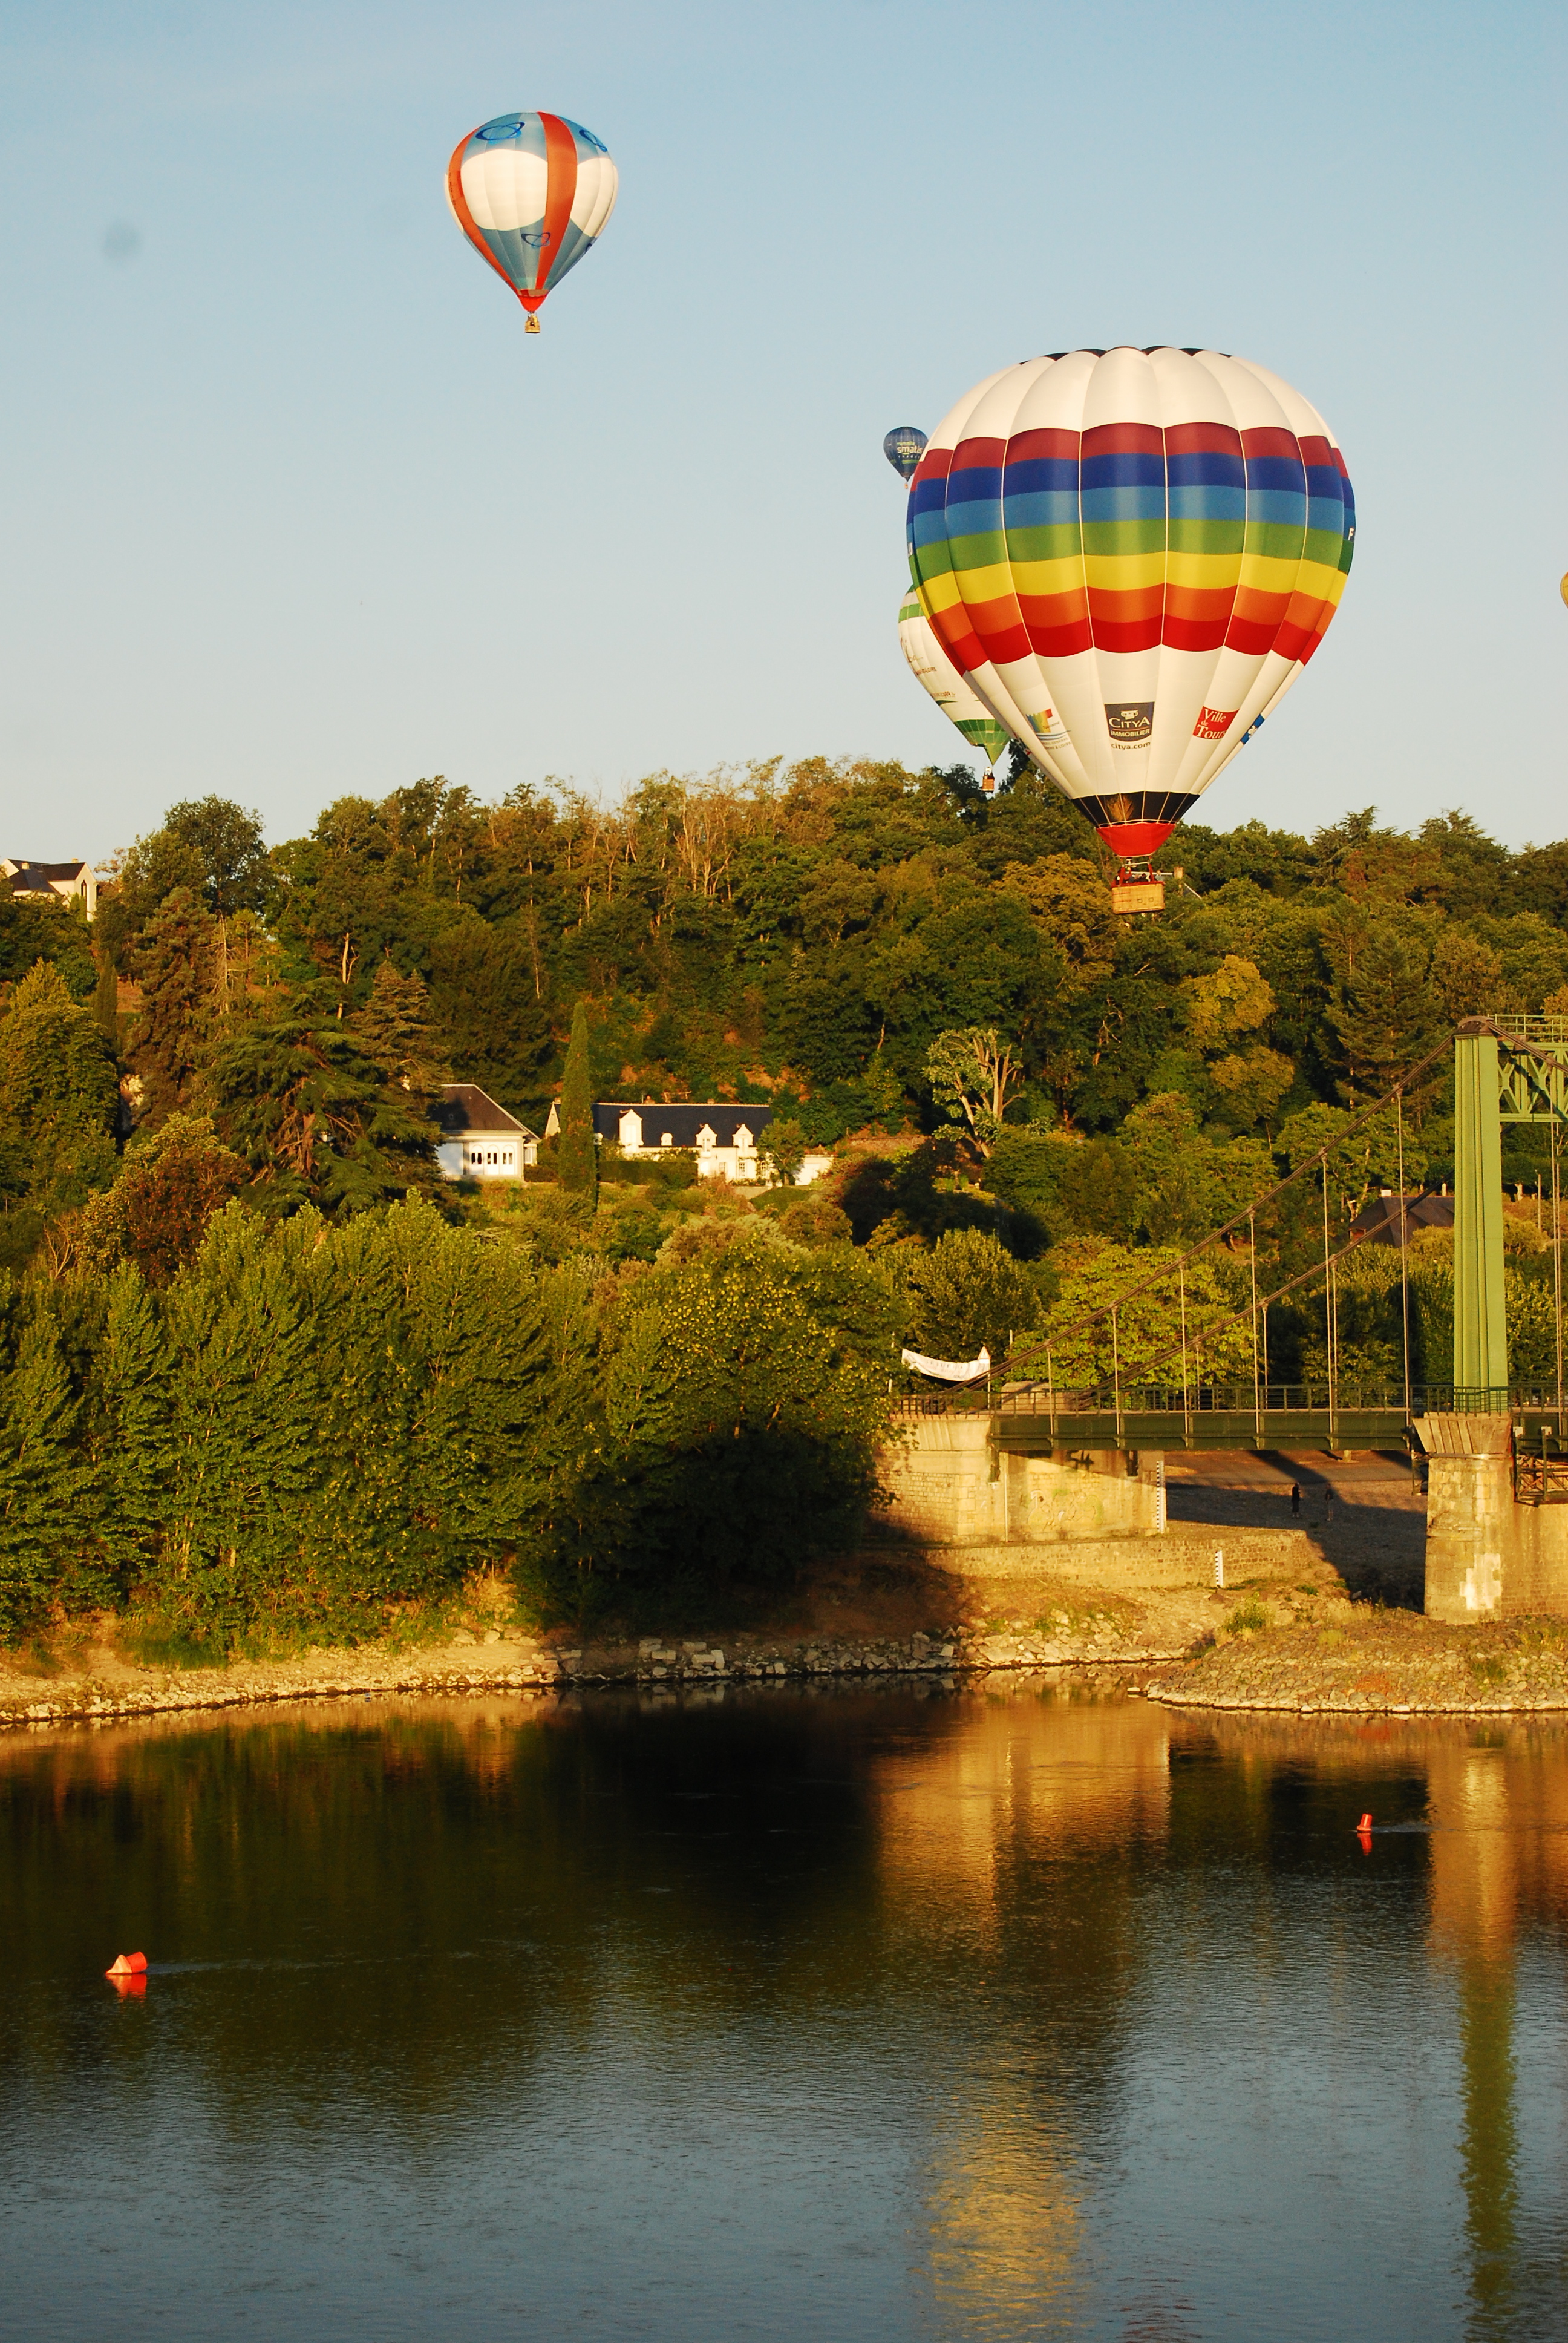 Loire Valley, France, Hot air Balloon ride